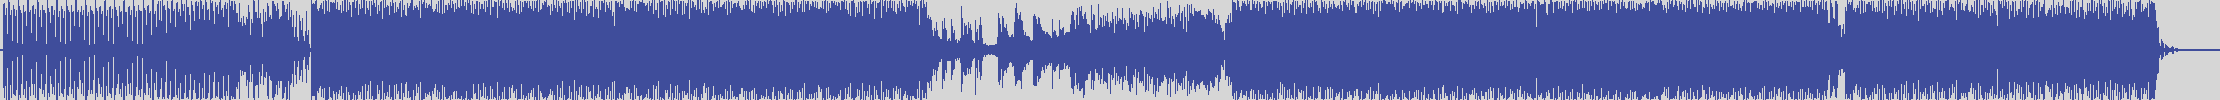 nf_boyz_records [NFY004] Second Emperador - Quo Vadiz [Spqr Mix] audio wave form